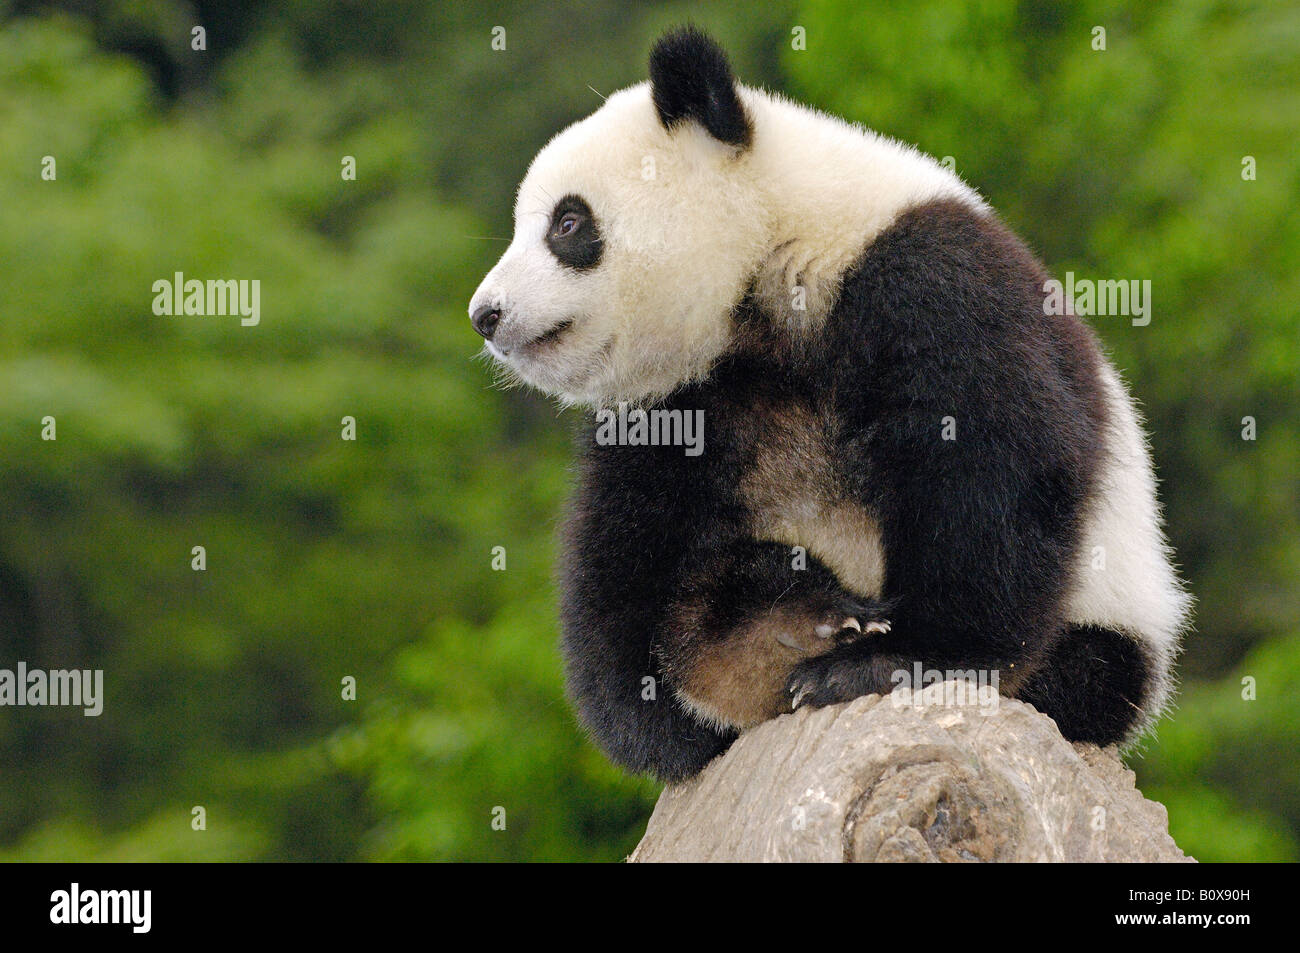 Panda géant (Ailuropoda melanoleuca). Jeune individu assis sur une souche d'arbre Banque D'Images